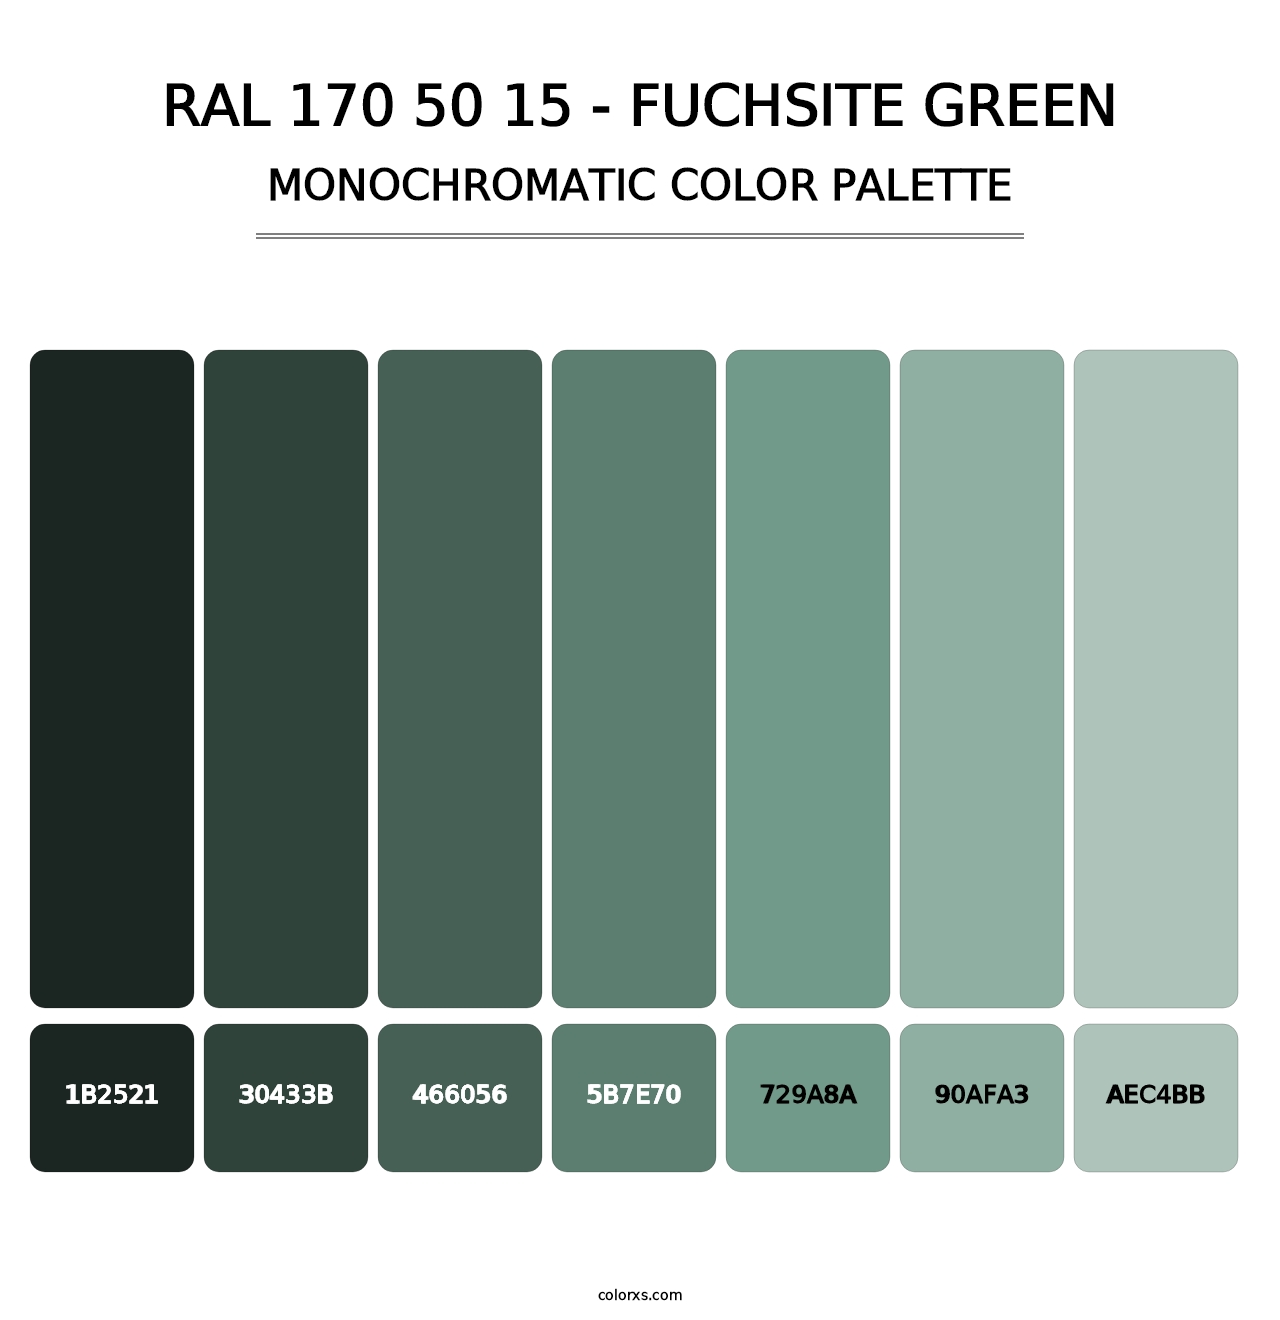 RAL 170 50 15 - Fuchsite Green - Monochromatic Color Palette